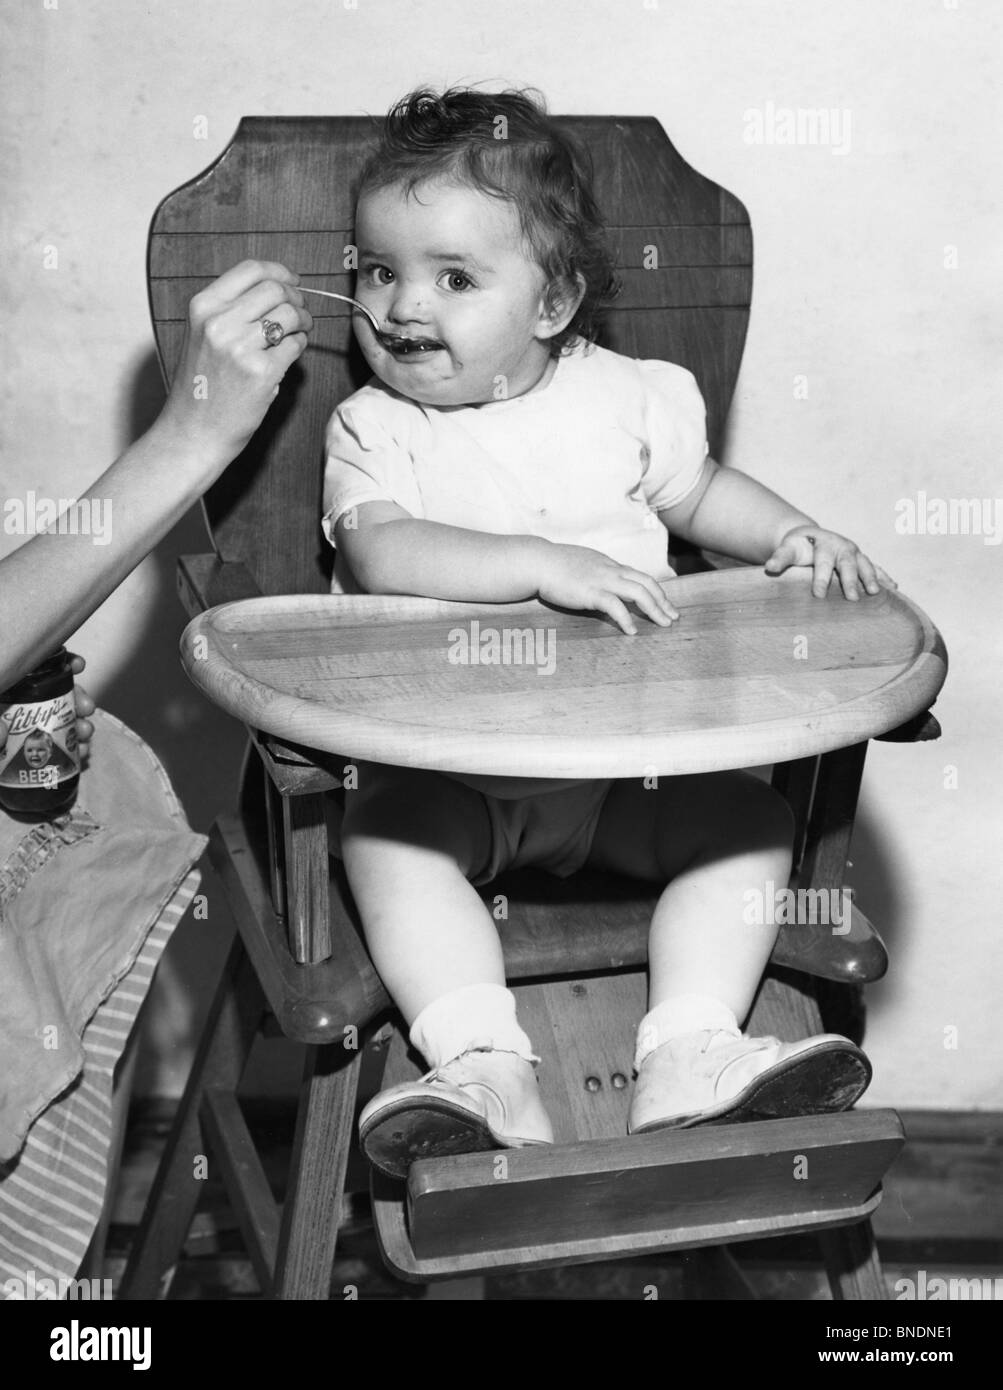 L'alimentation de bébé dans une chaise haute Banque D'Images